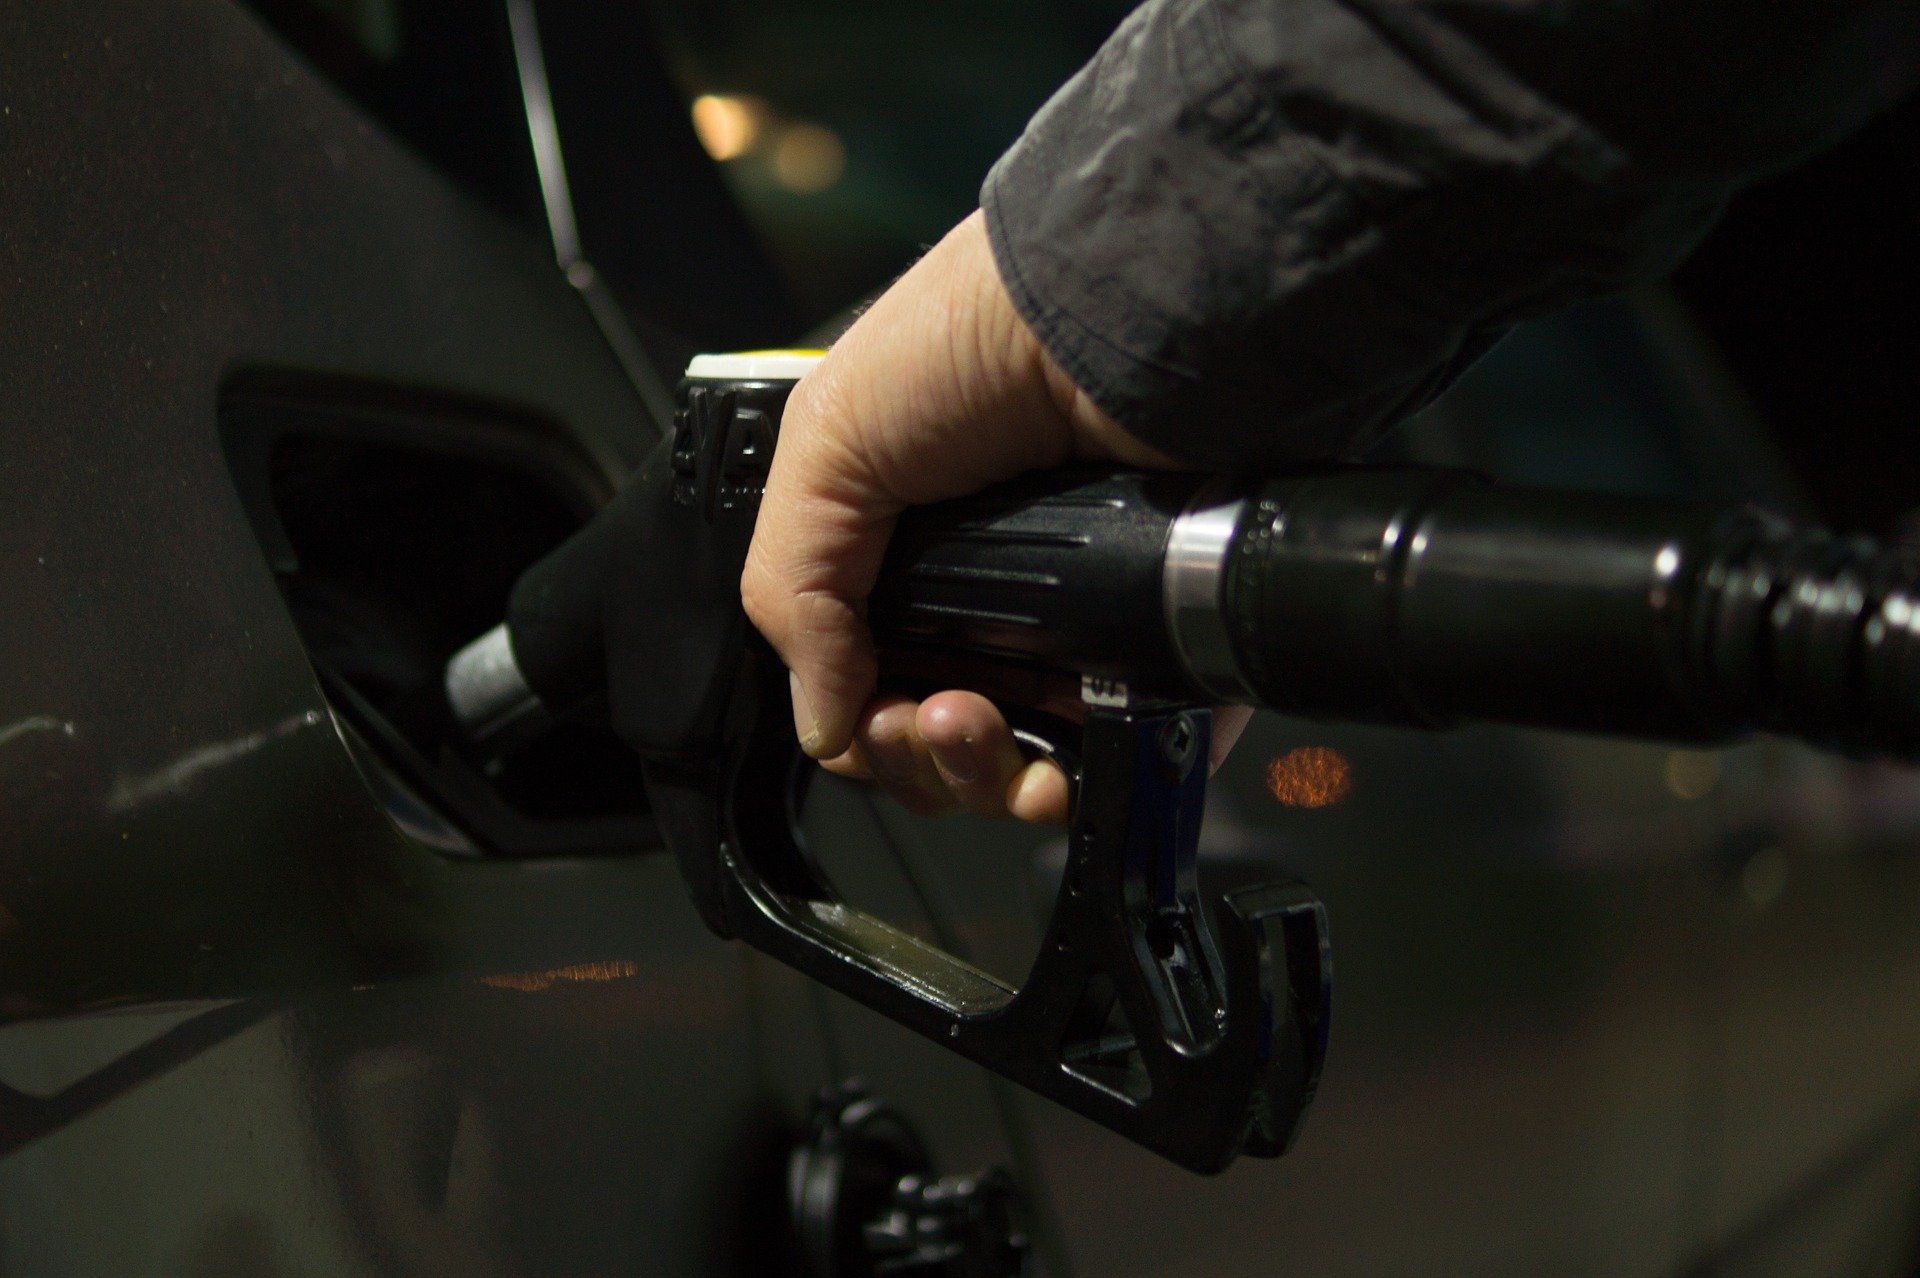 Fuel price July 12, 2022: Petrol Rs 96.72, diesel Rs 89.62 in Delhi